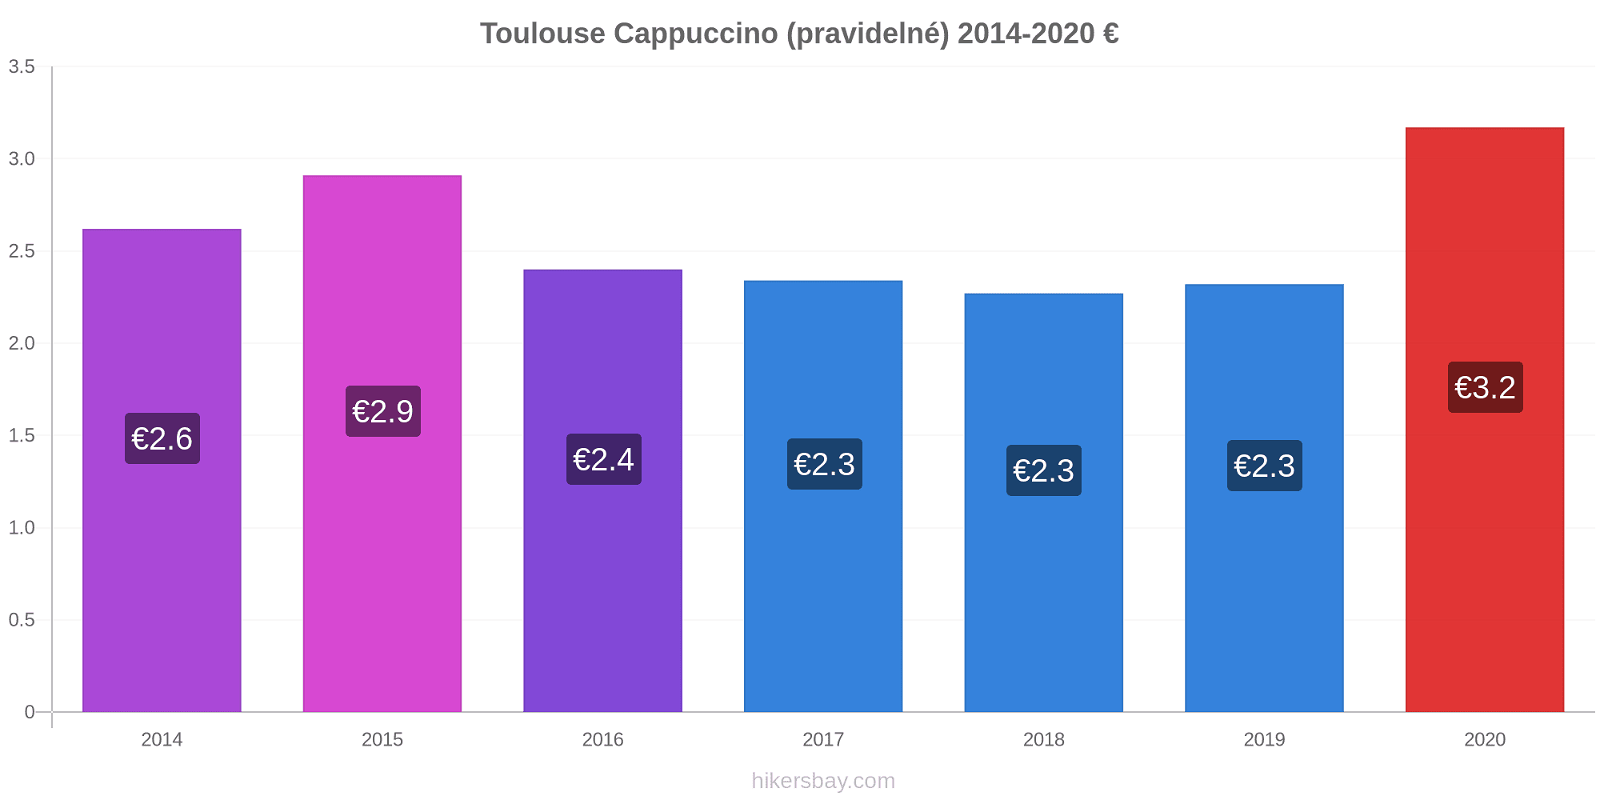 Toulouse změny cen Cappuccino (pravidelné) hikersbay.com